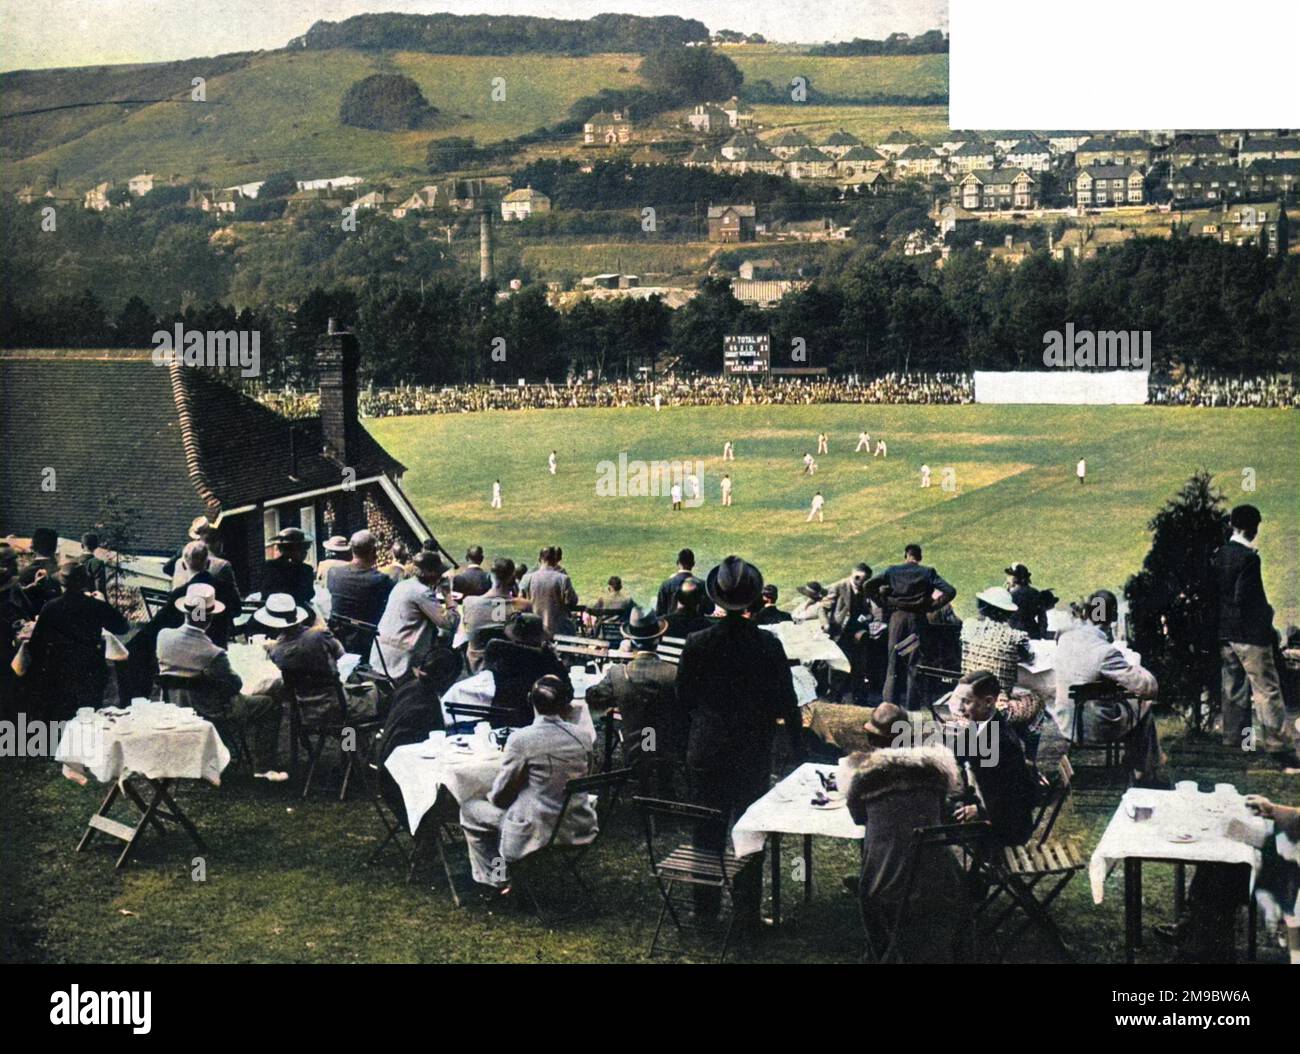 L'incantevole campo da cricket Crabble di dover, Kent, utilizzato dal Kent County Cricket Club dal 1907 al 1976. La partita in corso è tra il Kent e lo Yorkshire, che è stato facilmente vinto dai visitatori che hanno continuato a vincere il campionato della contea in quella stagione. Foto Stock